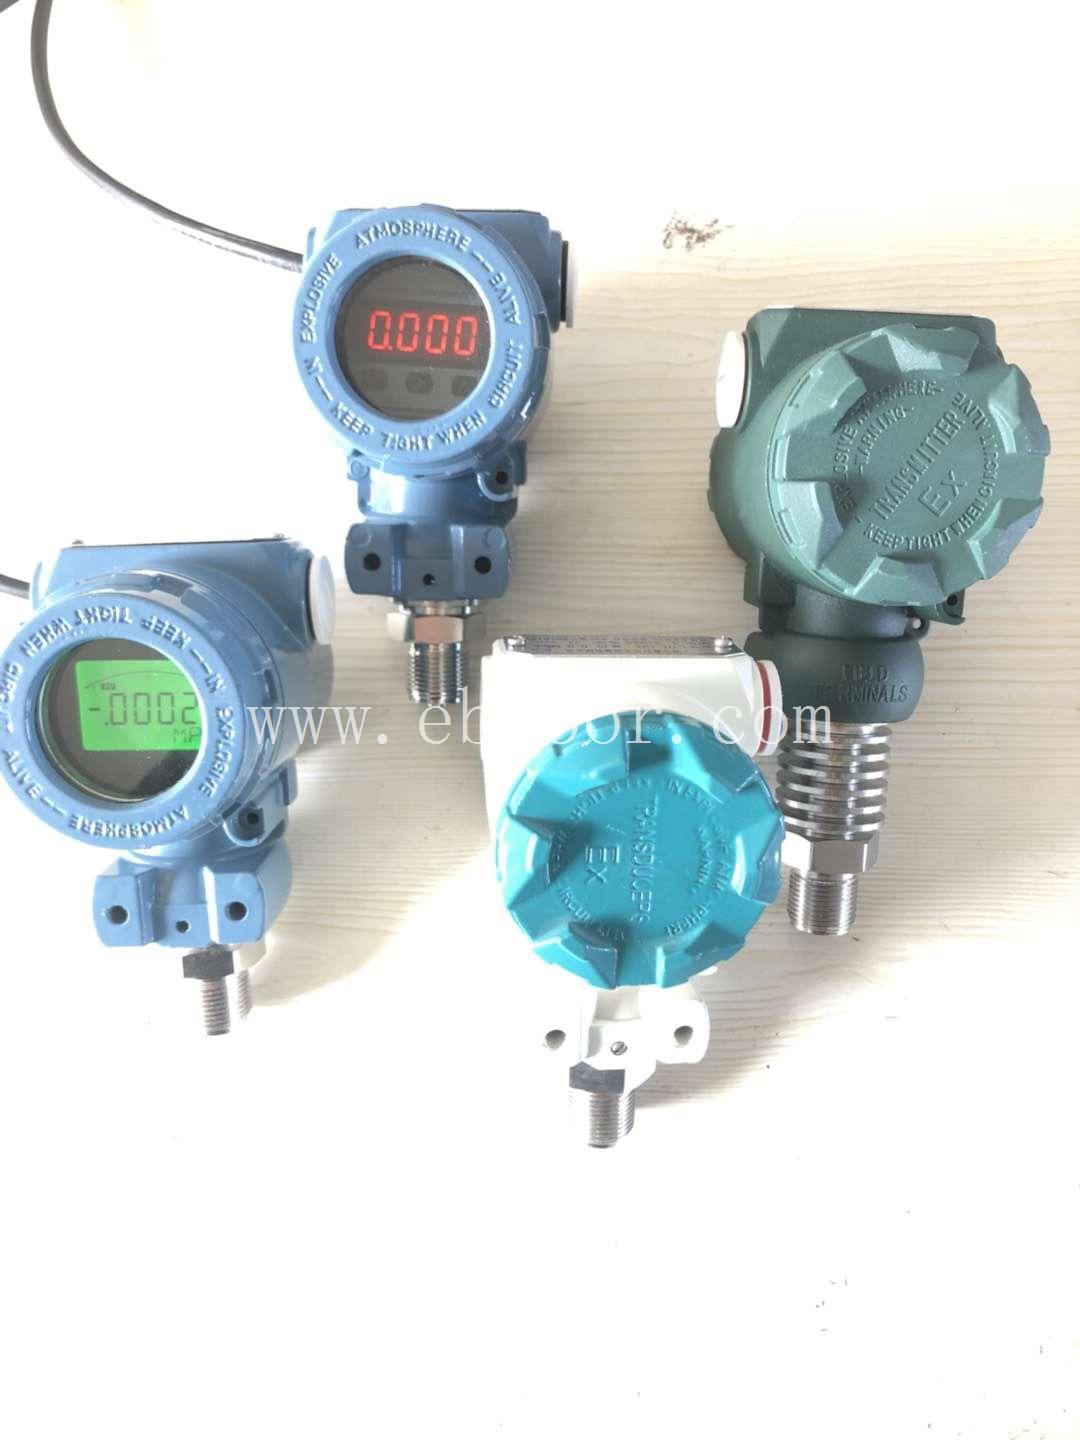 微型压力变送器设备 薄片式压力传感器 质量有保障